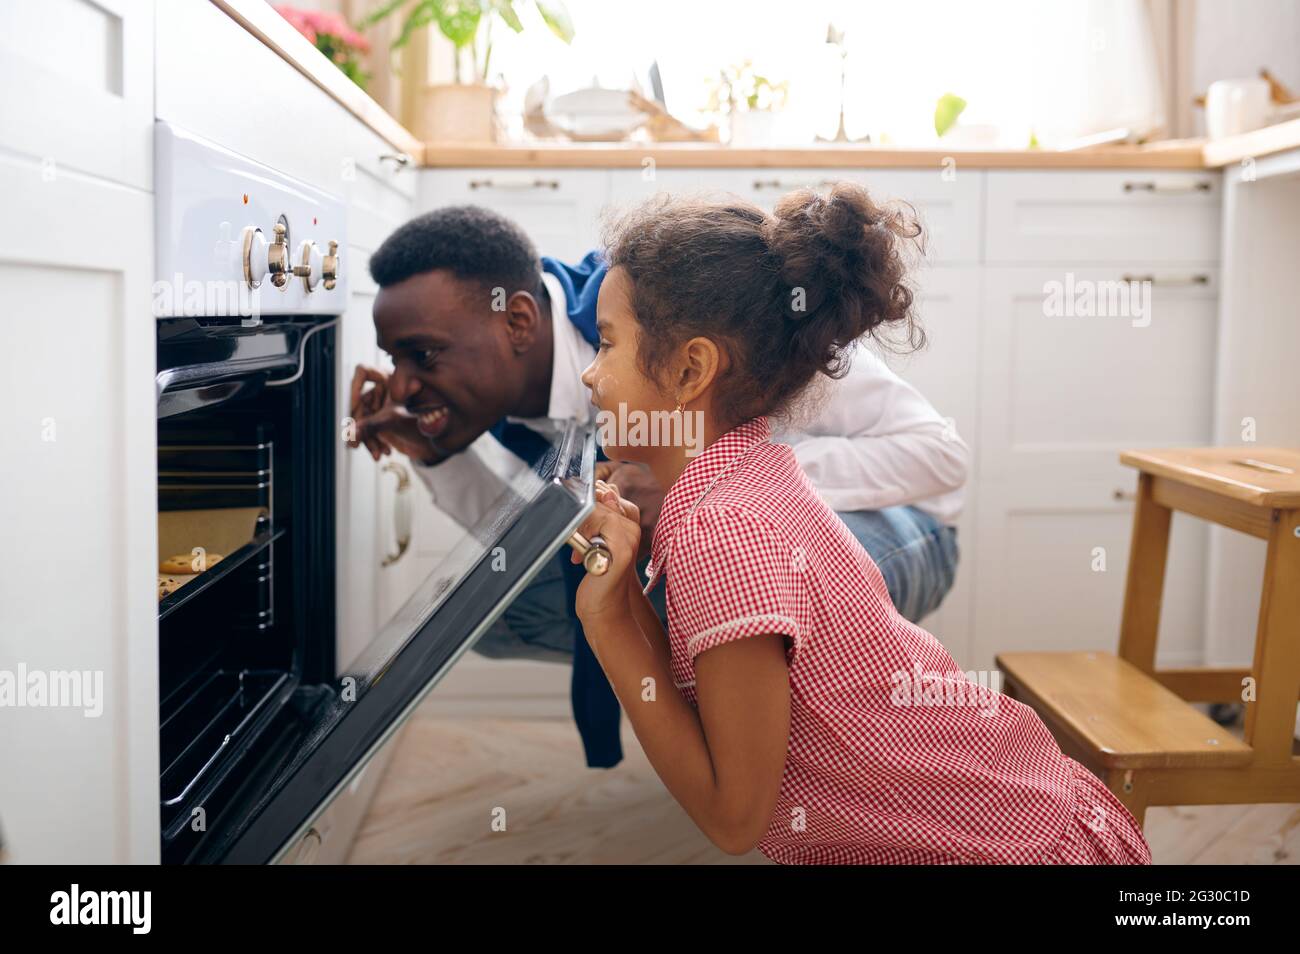 Vater und Kind beim Frühstück Kuchen im Ofen kochen Stockfoto